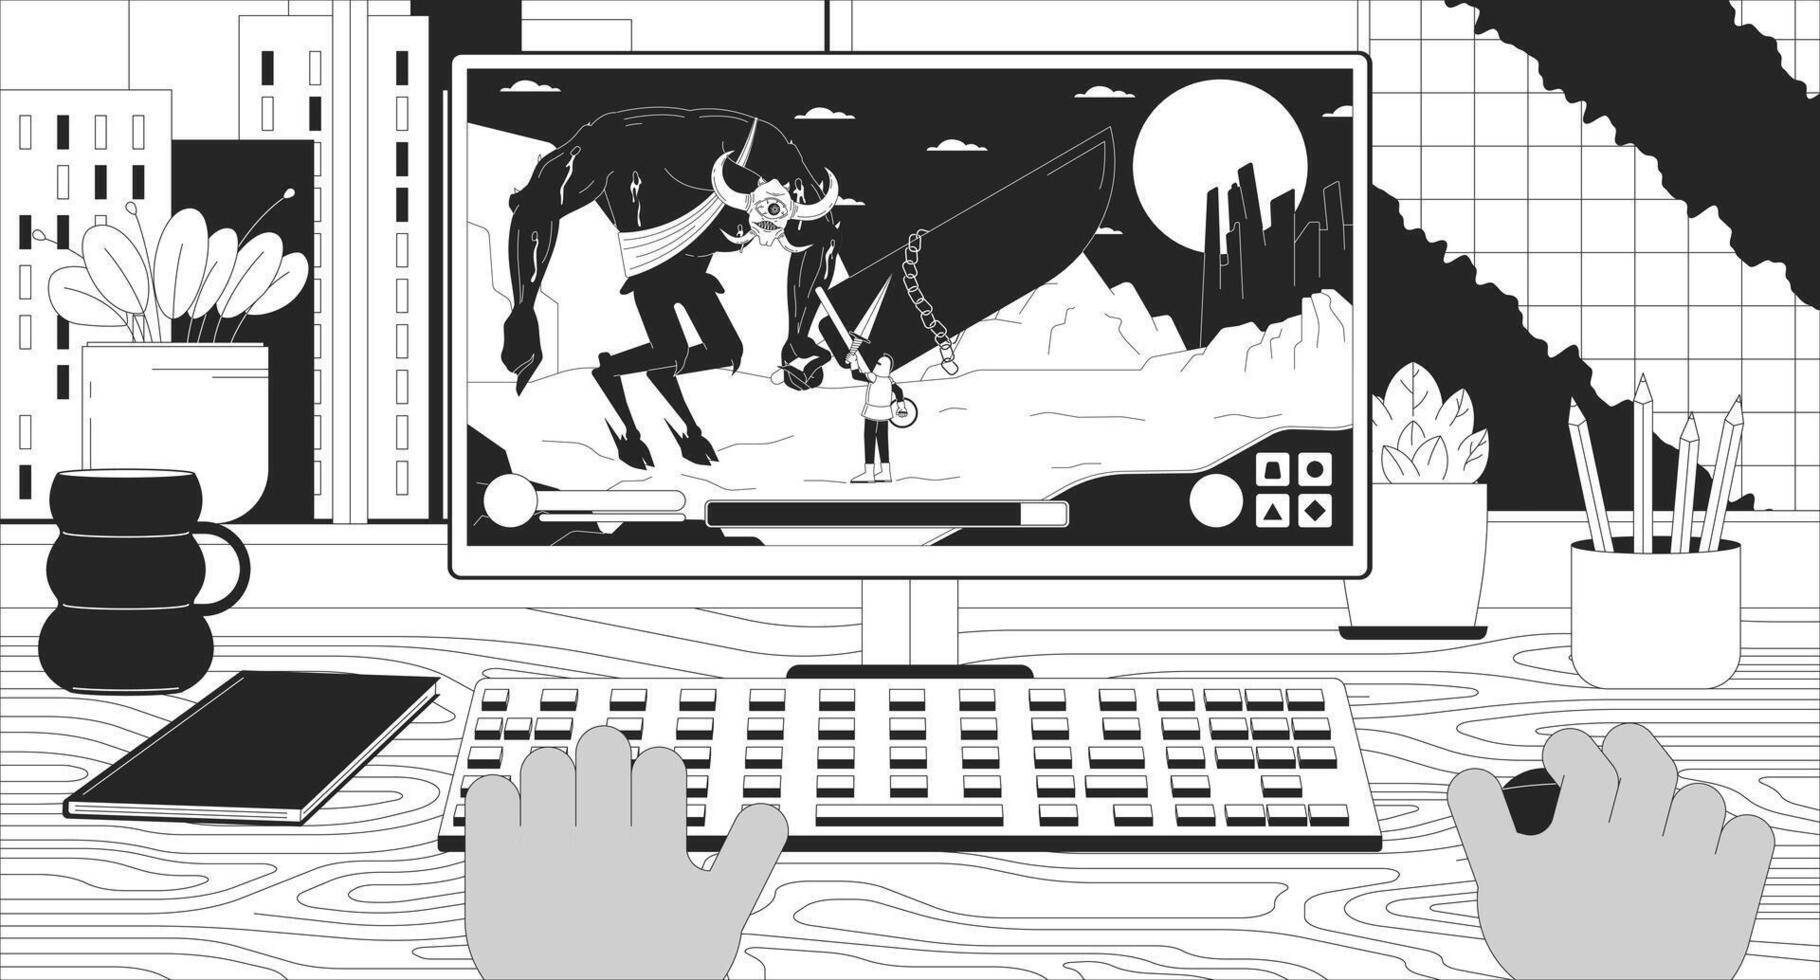 zwart gebruiker spelen computer spel 2d lineair illustratie concept. gamer verslaan baas demon in rpg tekenfilm tafereel achtergrond. computer gaming hobby metafoor abstract vlak vector schets grafisch